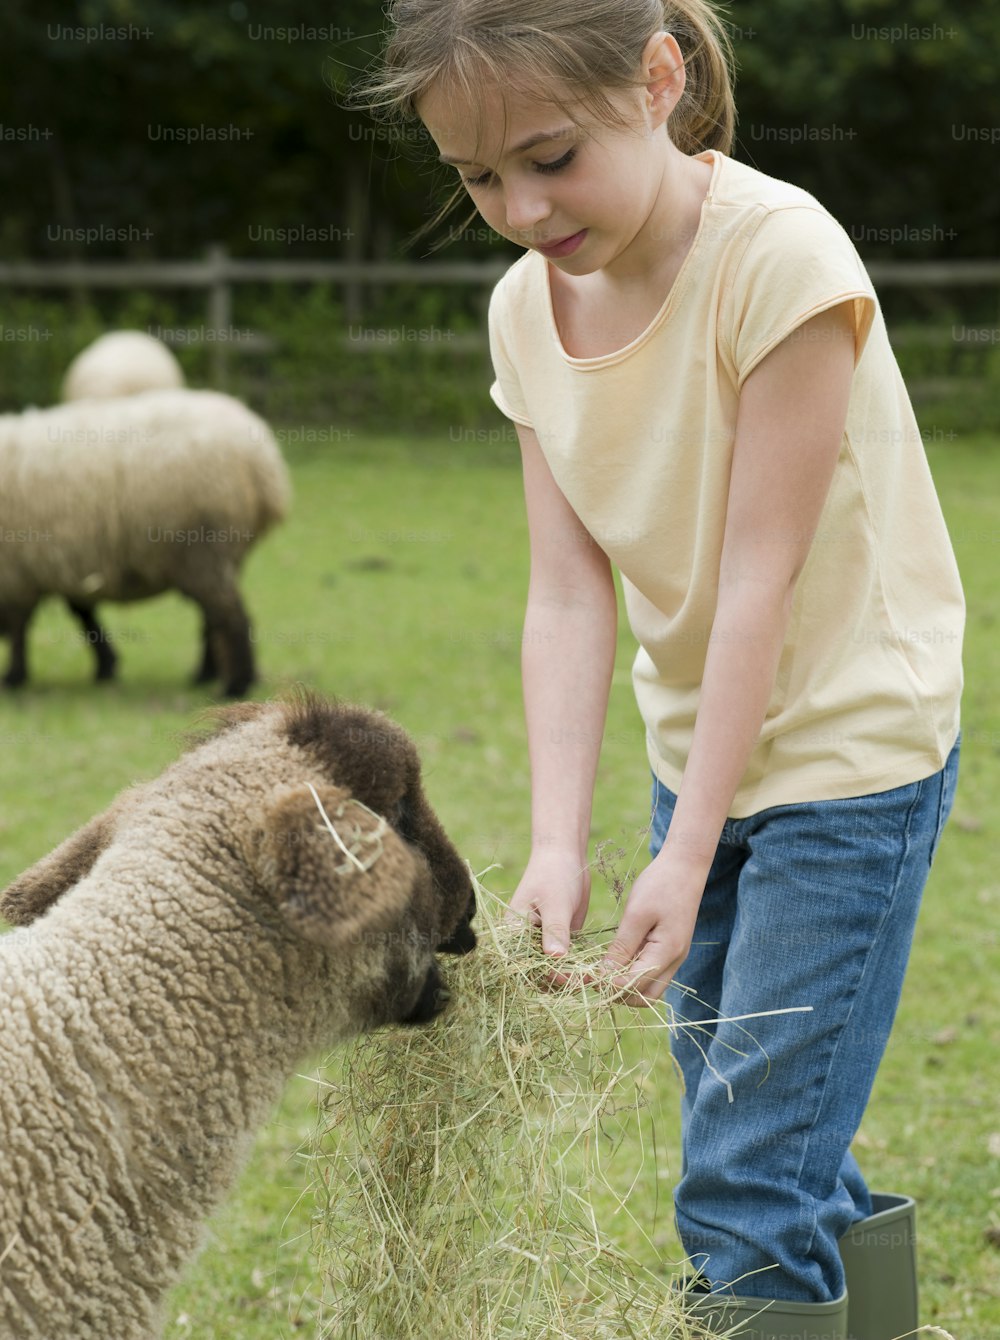 Une jeune fille nourrissant un mouton dans un champ